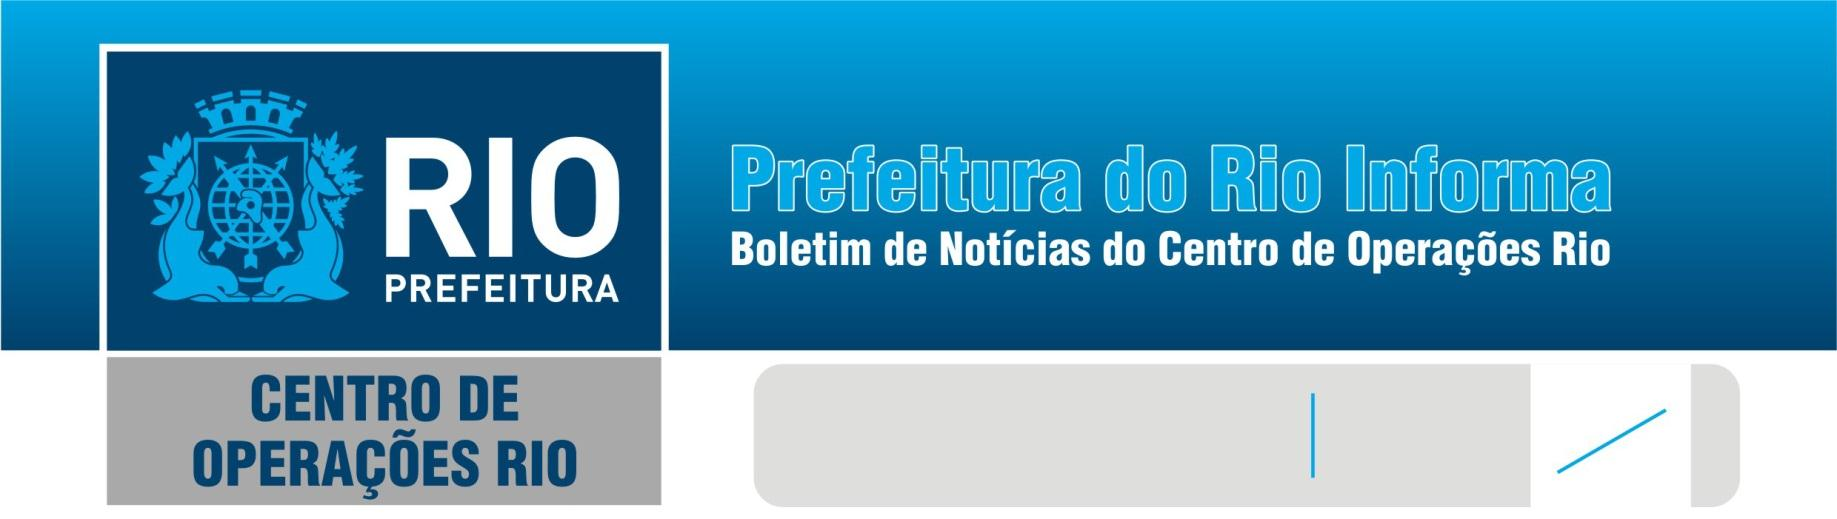 Sábado 31/12/11 30º 19º Veja as principais informações sobre o planejamento operacional para o Réveillon de Copacabana no boletim especial, disponível pra leitura no link: http://t.co/yxfv7pvr.